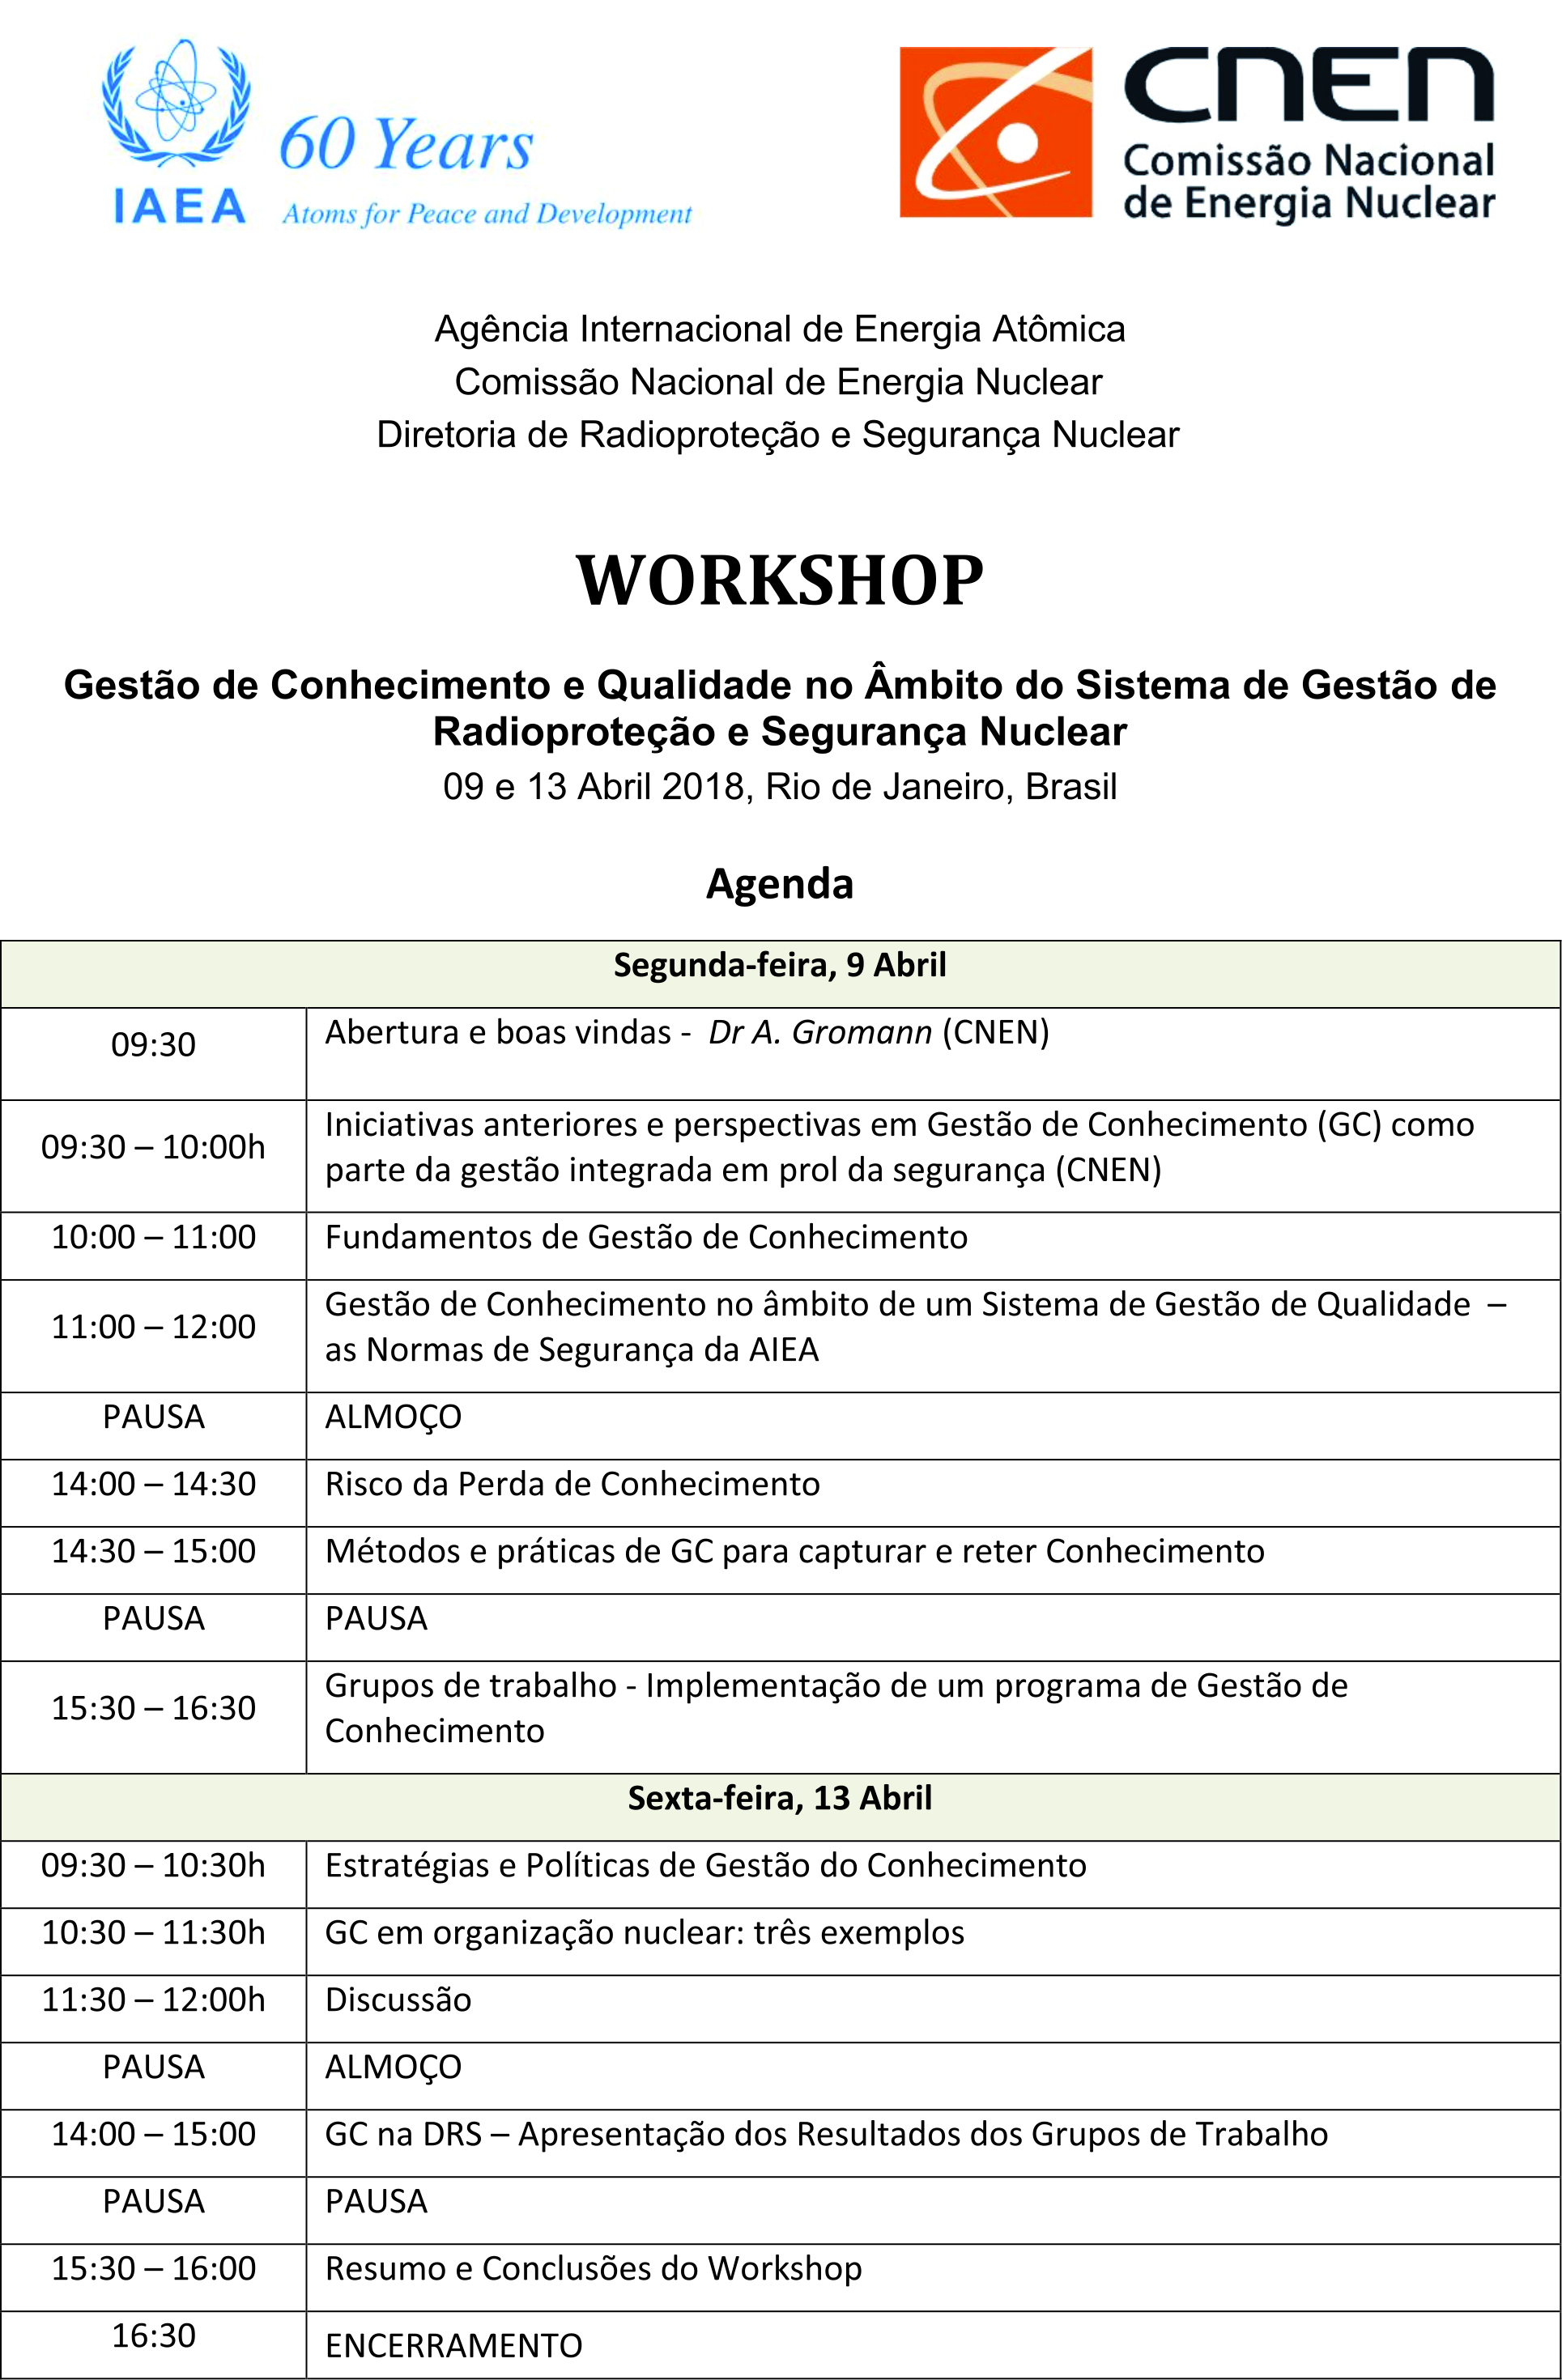 Agenda workshop CNEN DRS 9 e 13 versão 2